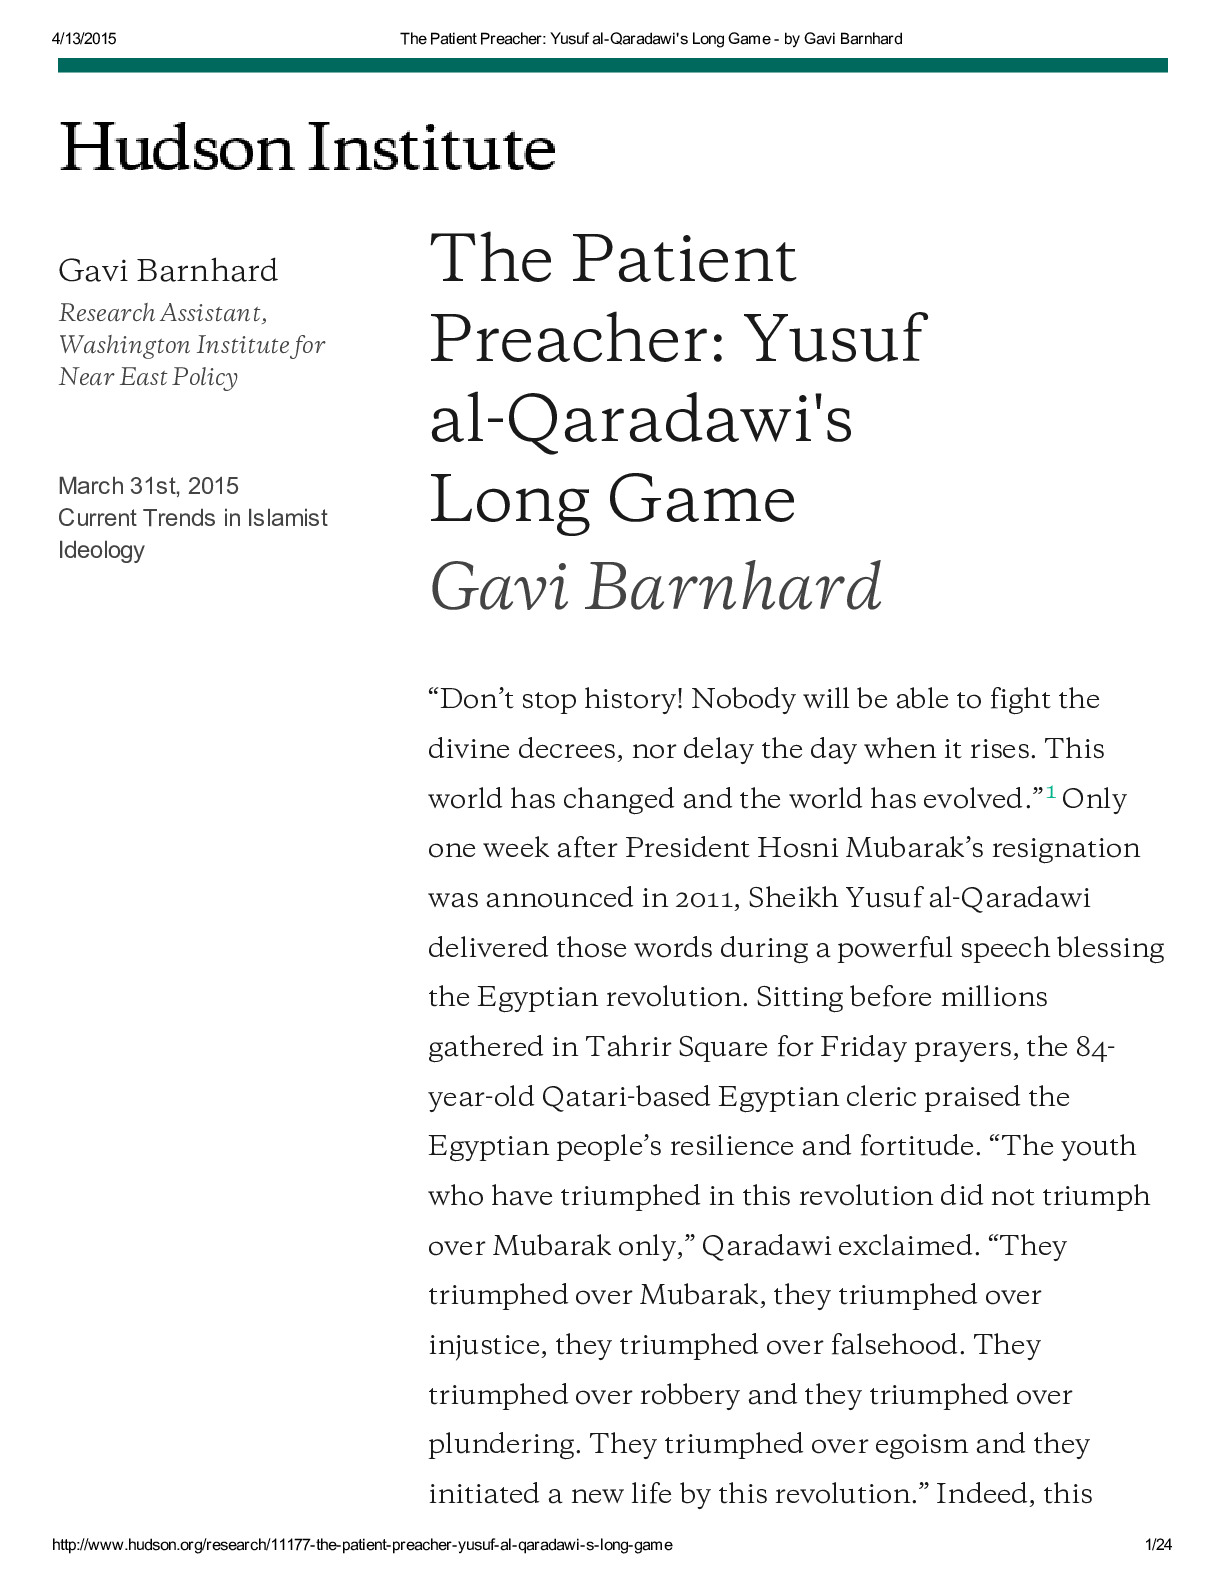 Barnhard20150331-Hudson.pdf